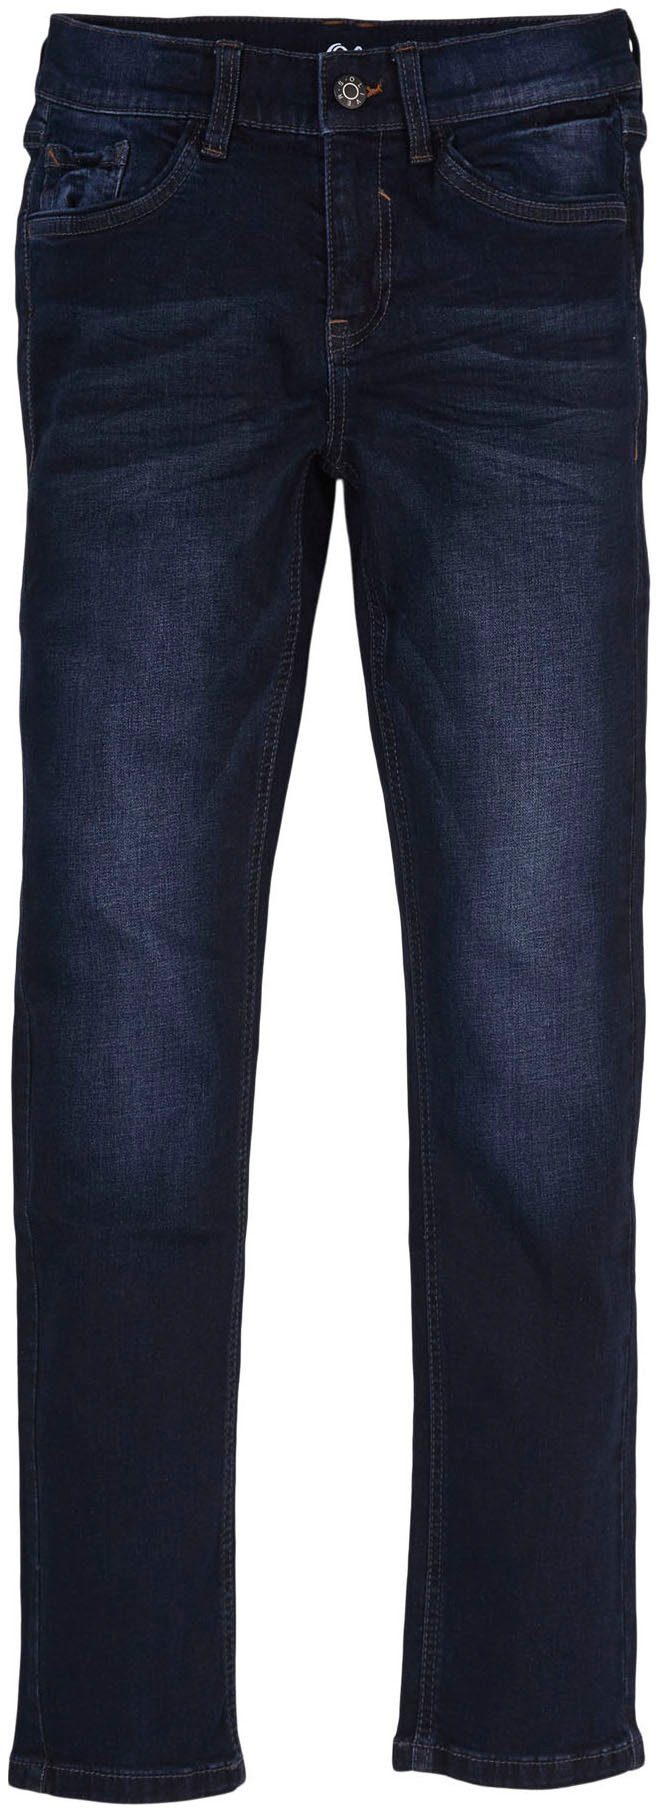 s.Oliver Junior Skinny-fit-Jeans, Baumwollmischung mit Elasthan-Anteil